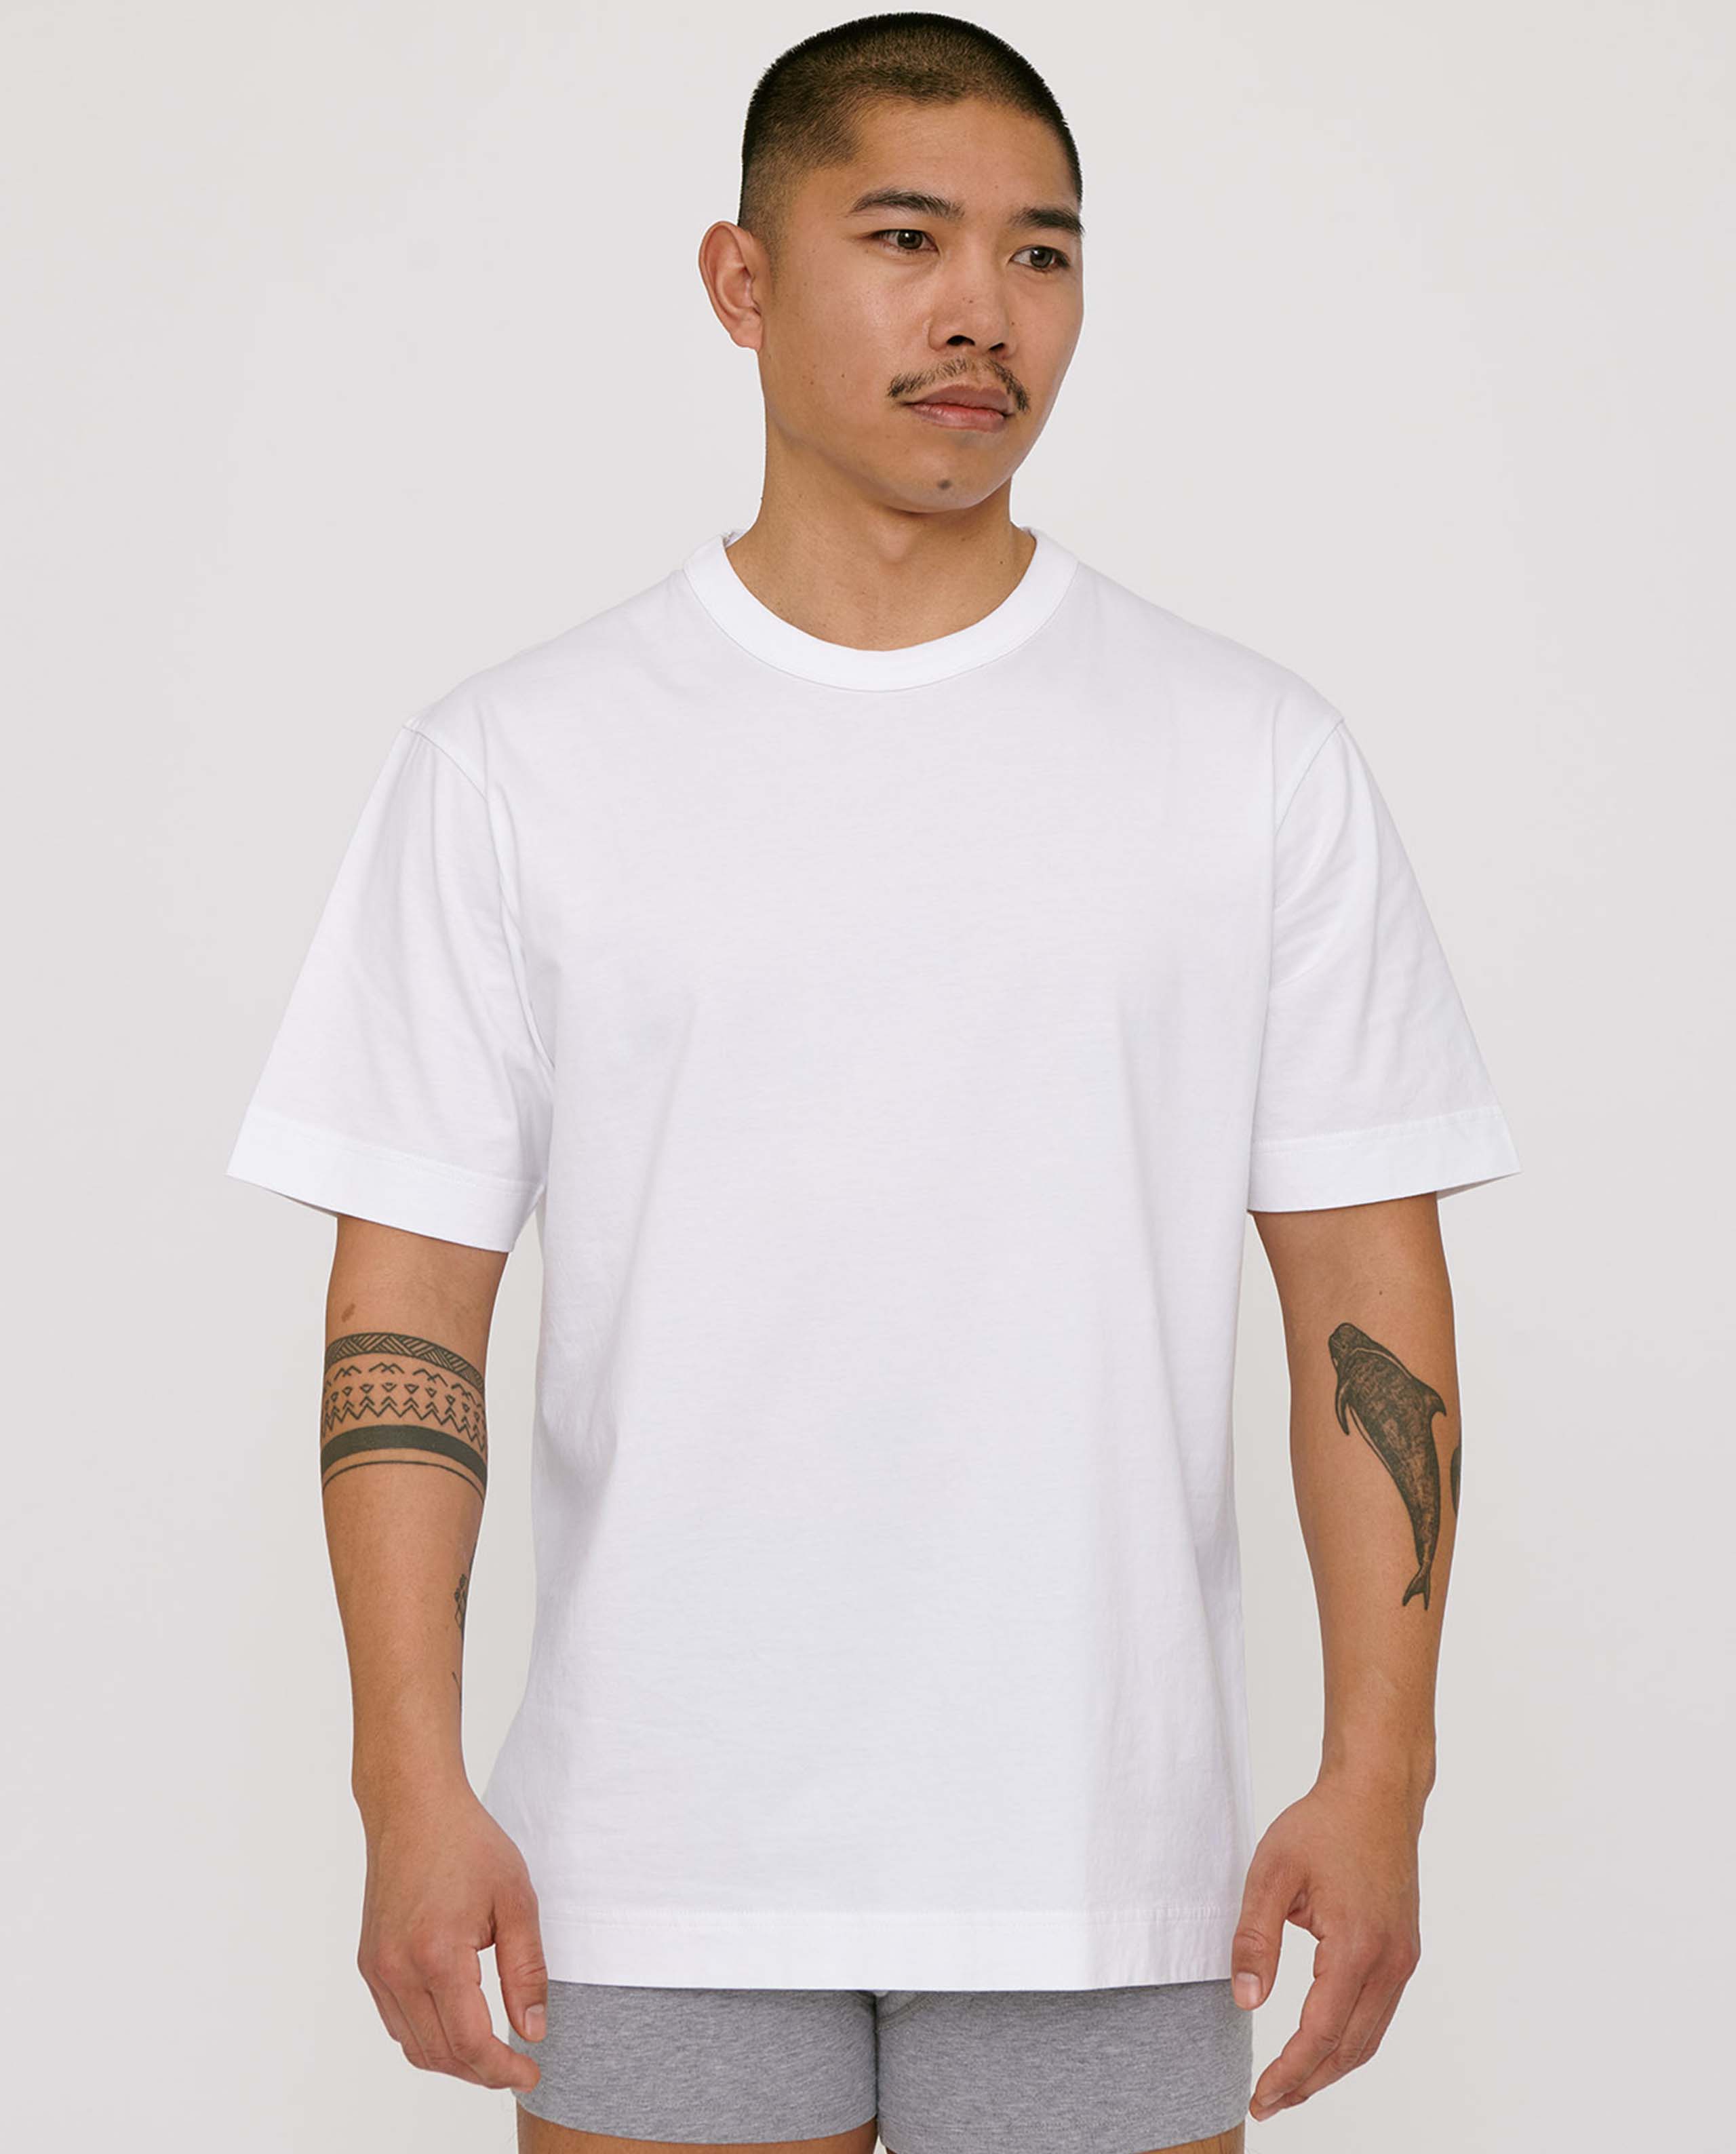 T-shirt blanc basique en coton Bio, éthique et Made in France